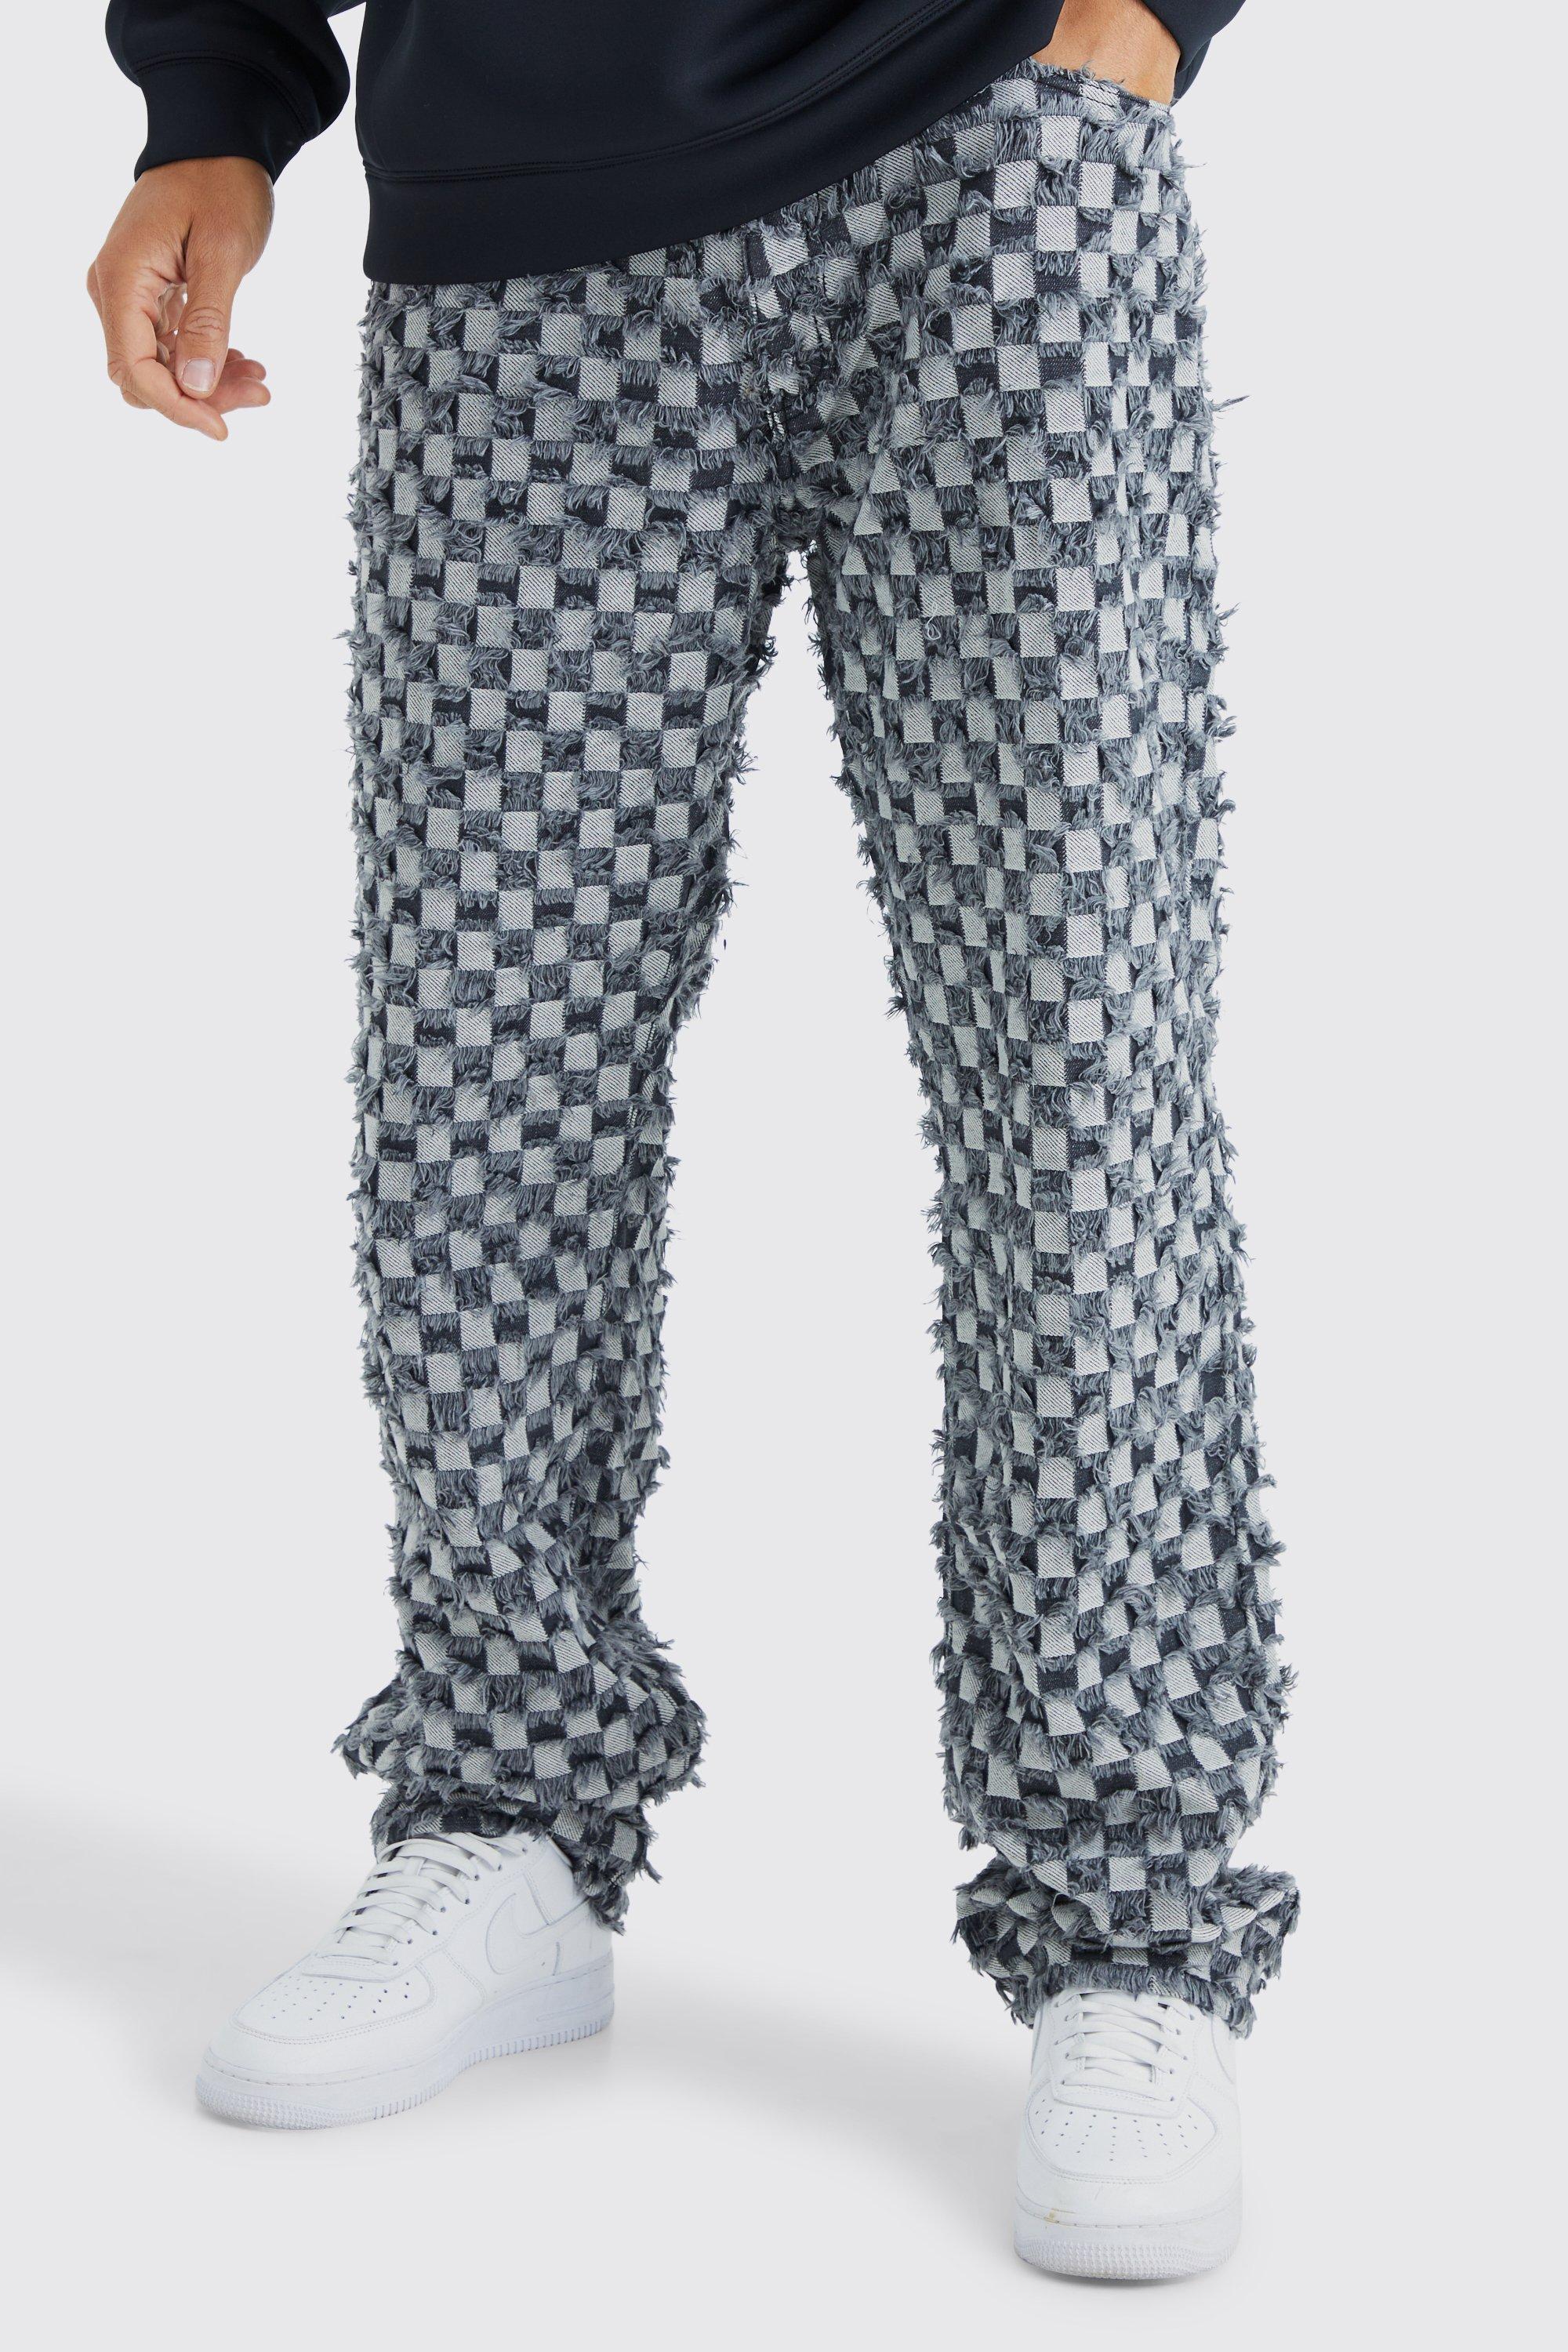 tall - pantalon large à carreaux homme - gris - 30, gris